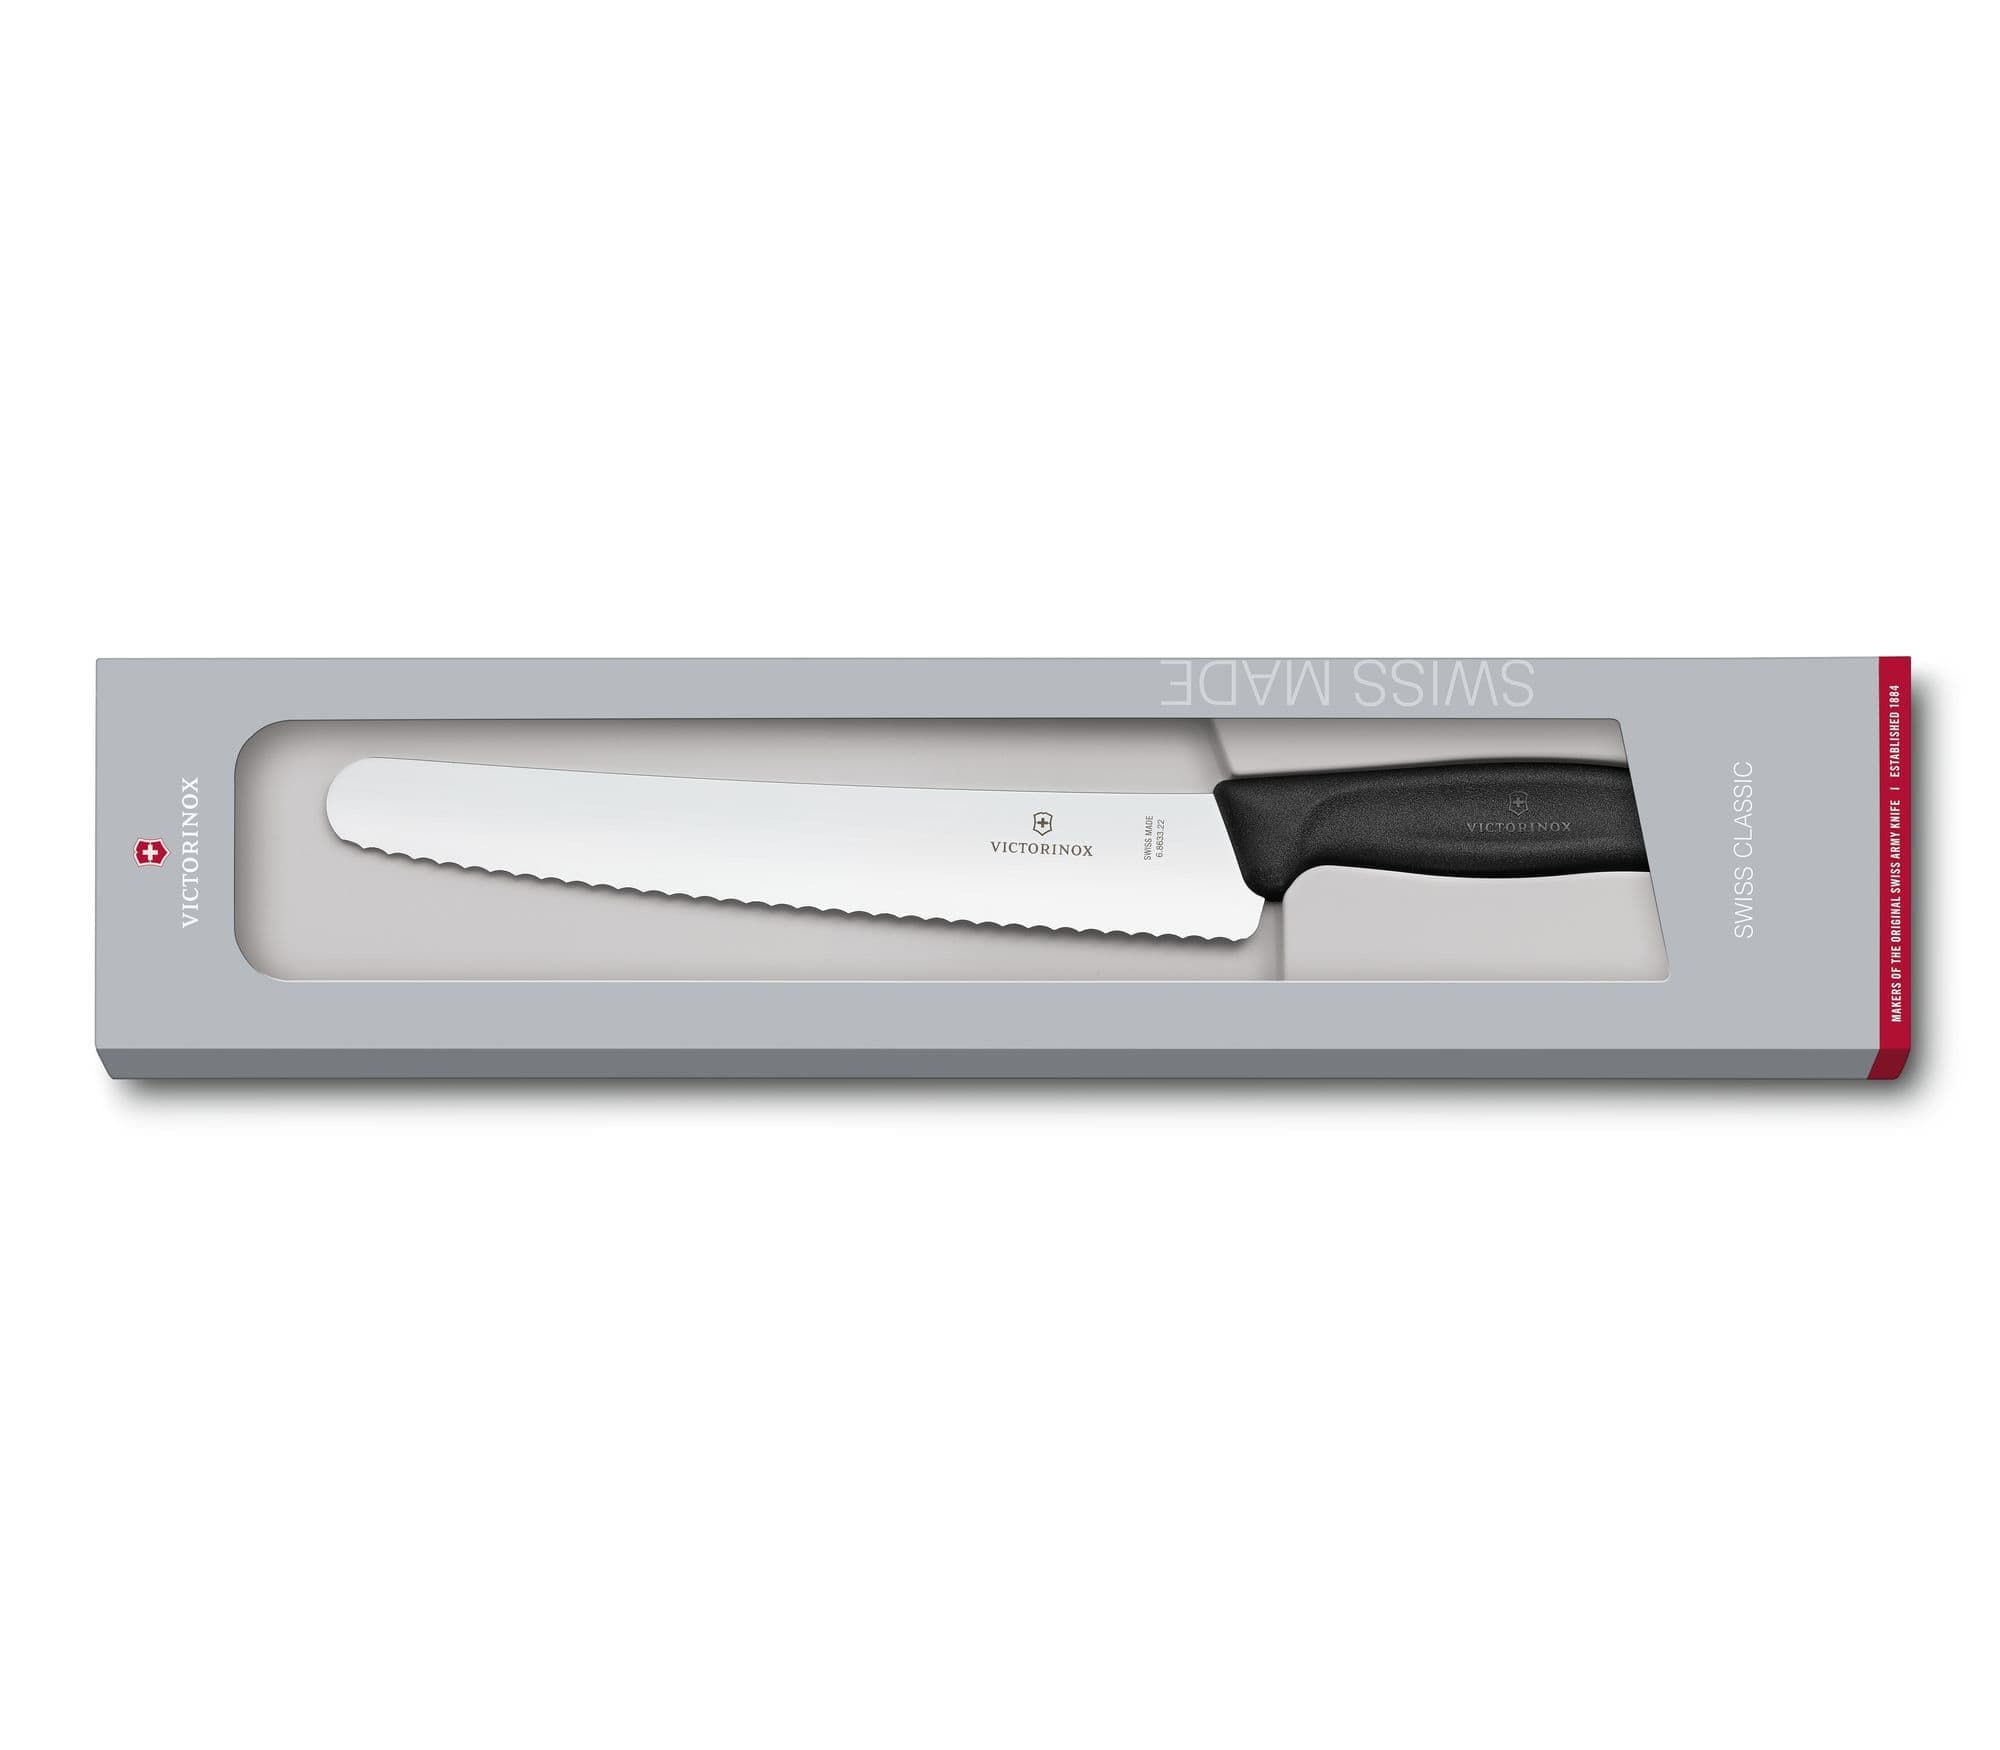 سكين خبز ومعجنات فيكتورينوكس سويسري كلاسيكي، شفرة 22 سم اسود - 6.8633.22B